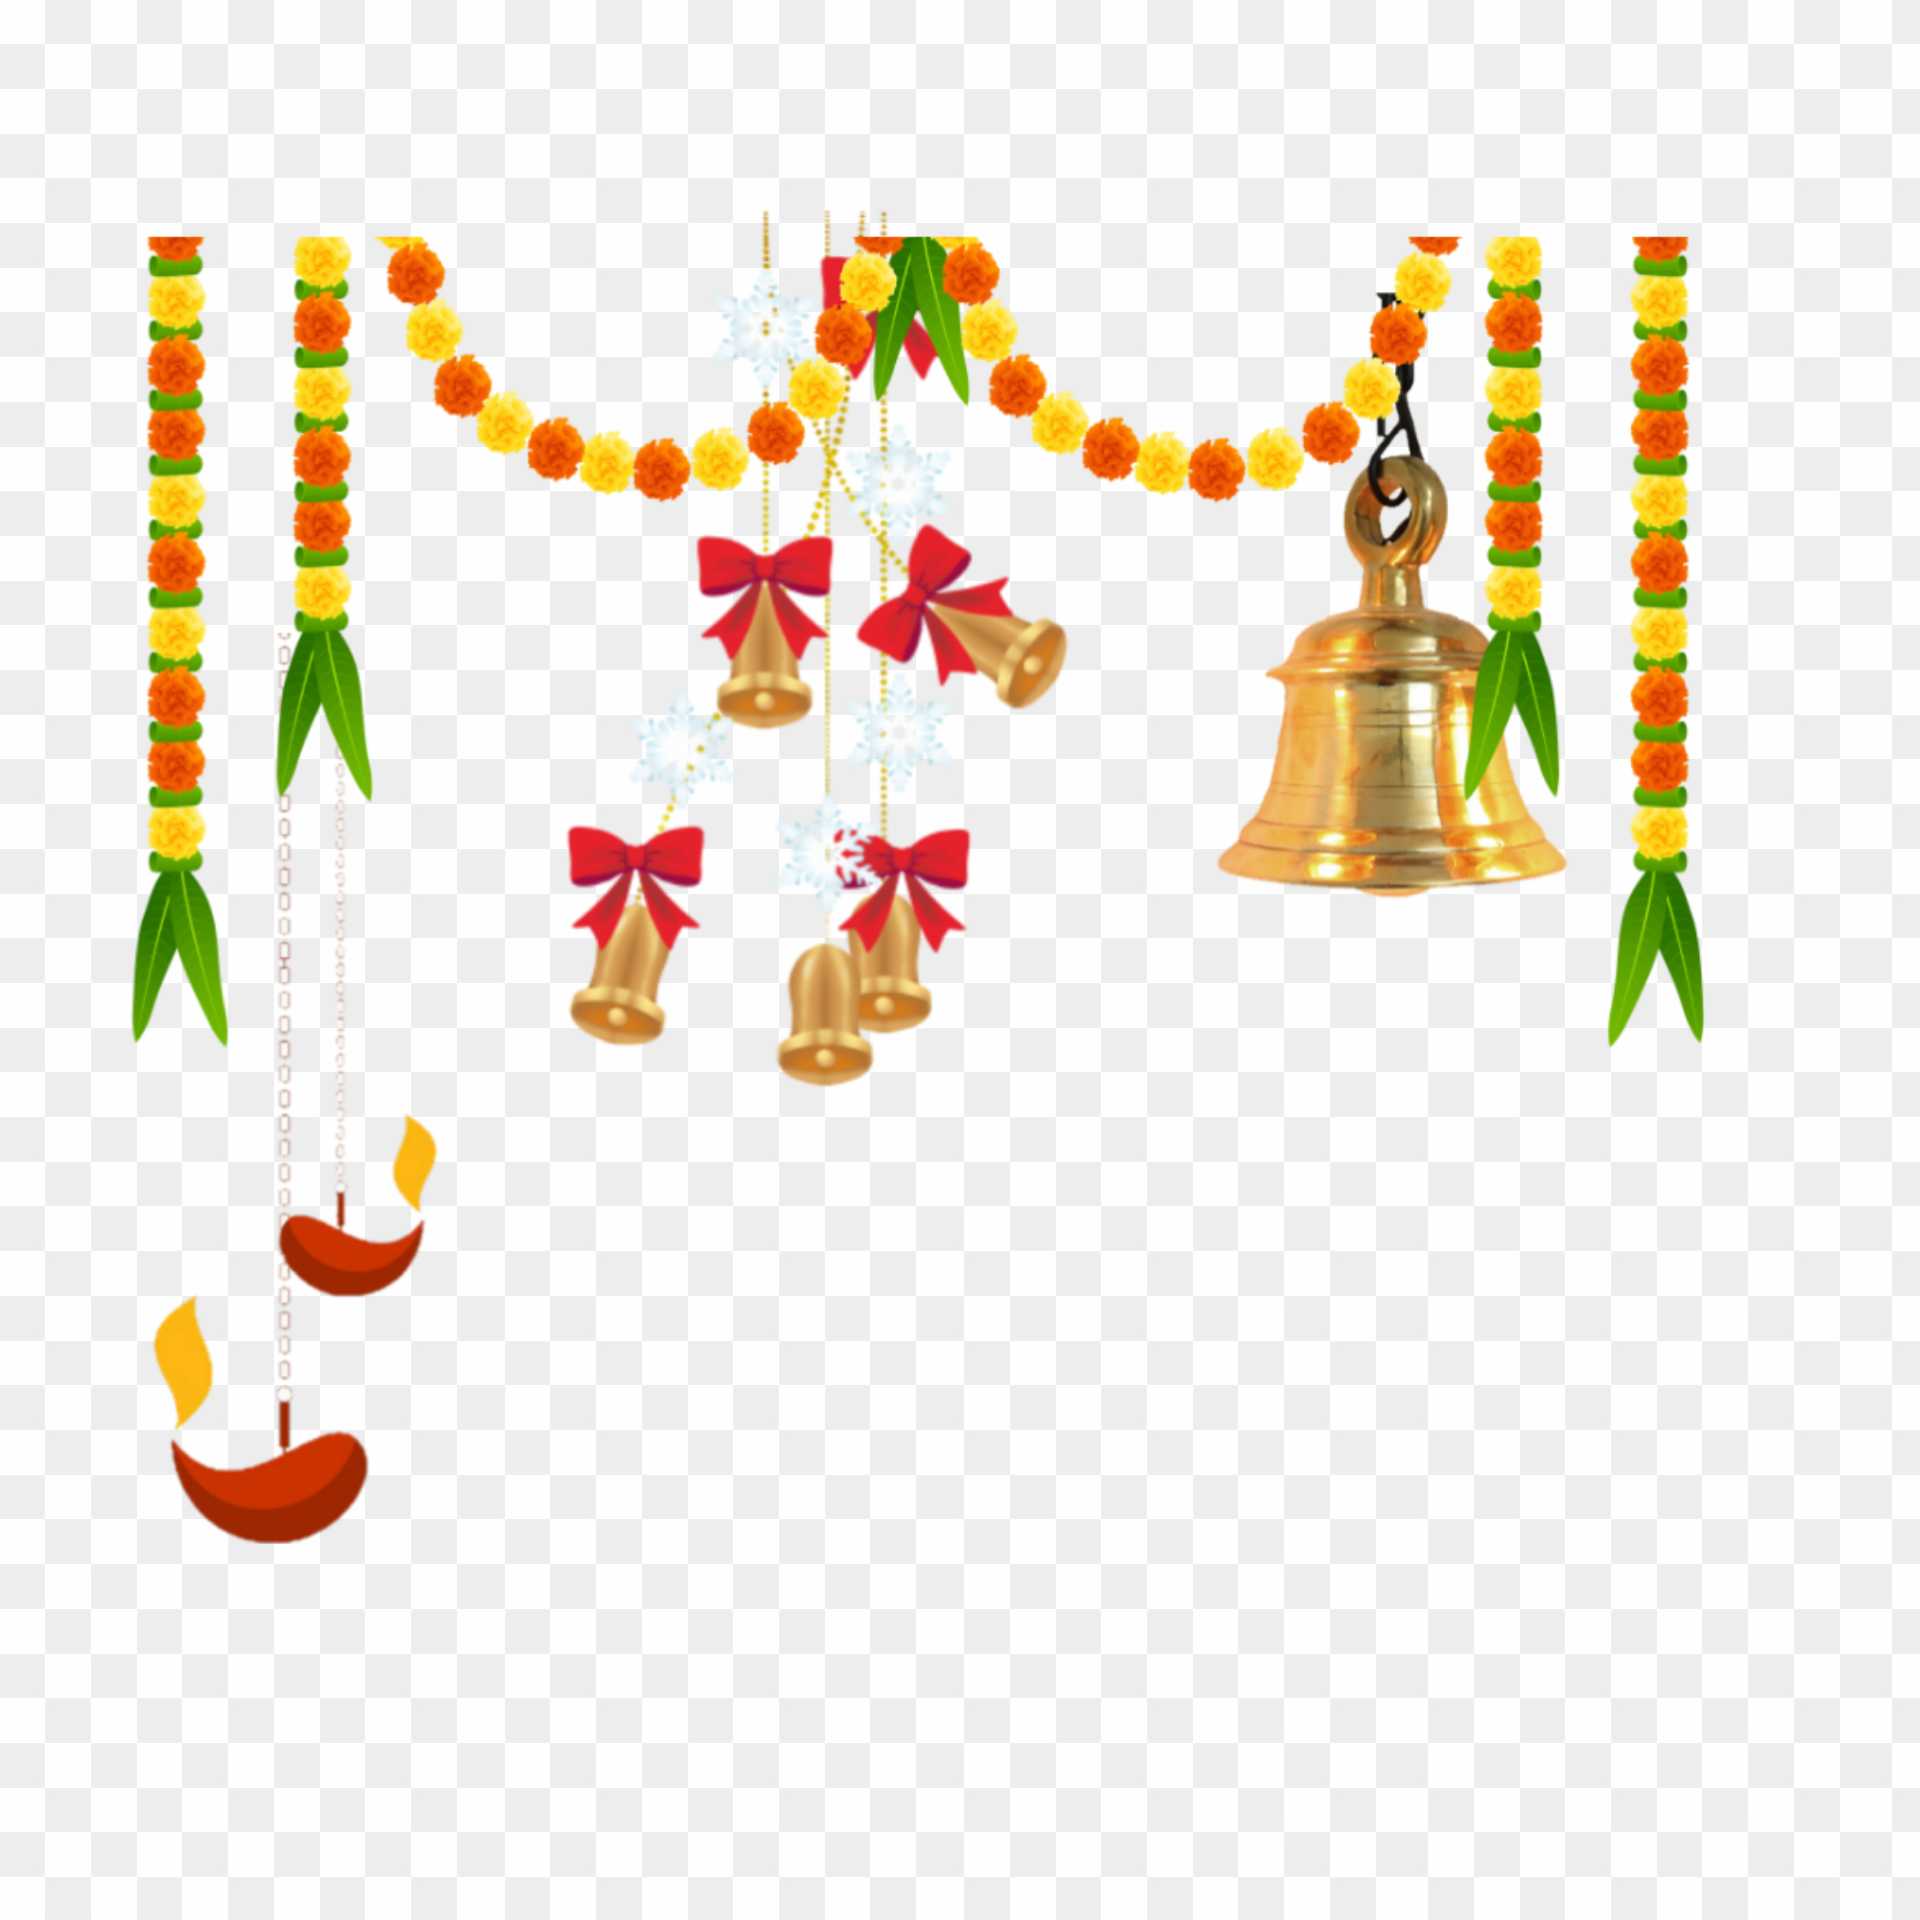 Hindu banner decoration PNG images download 